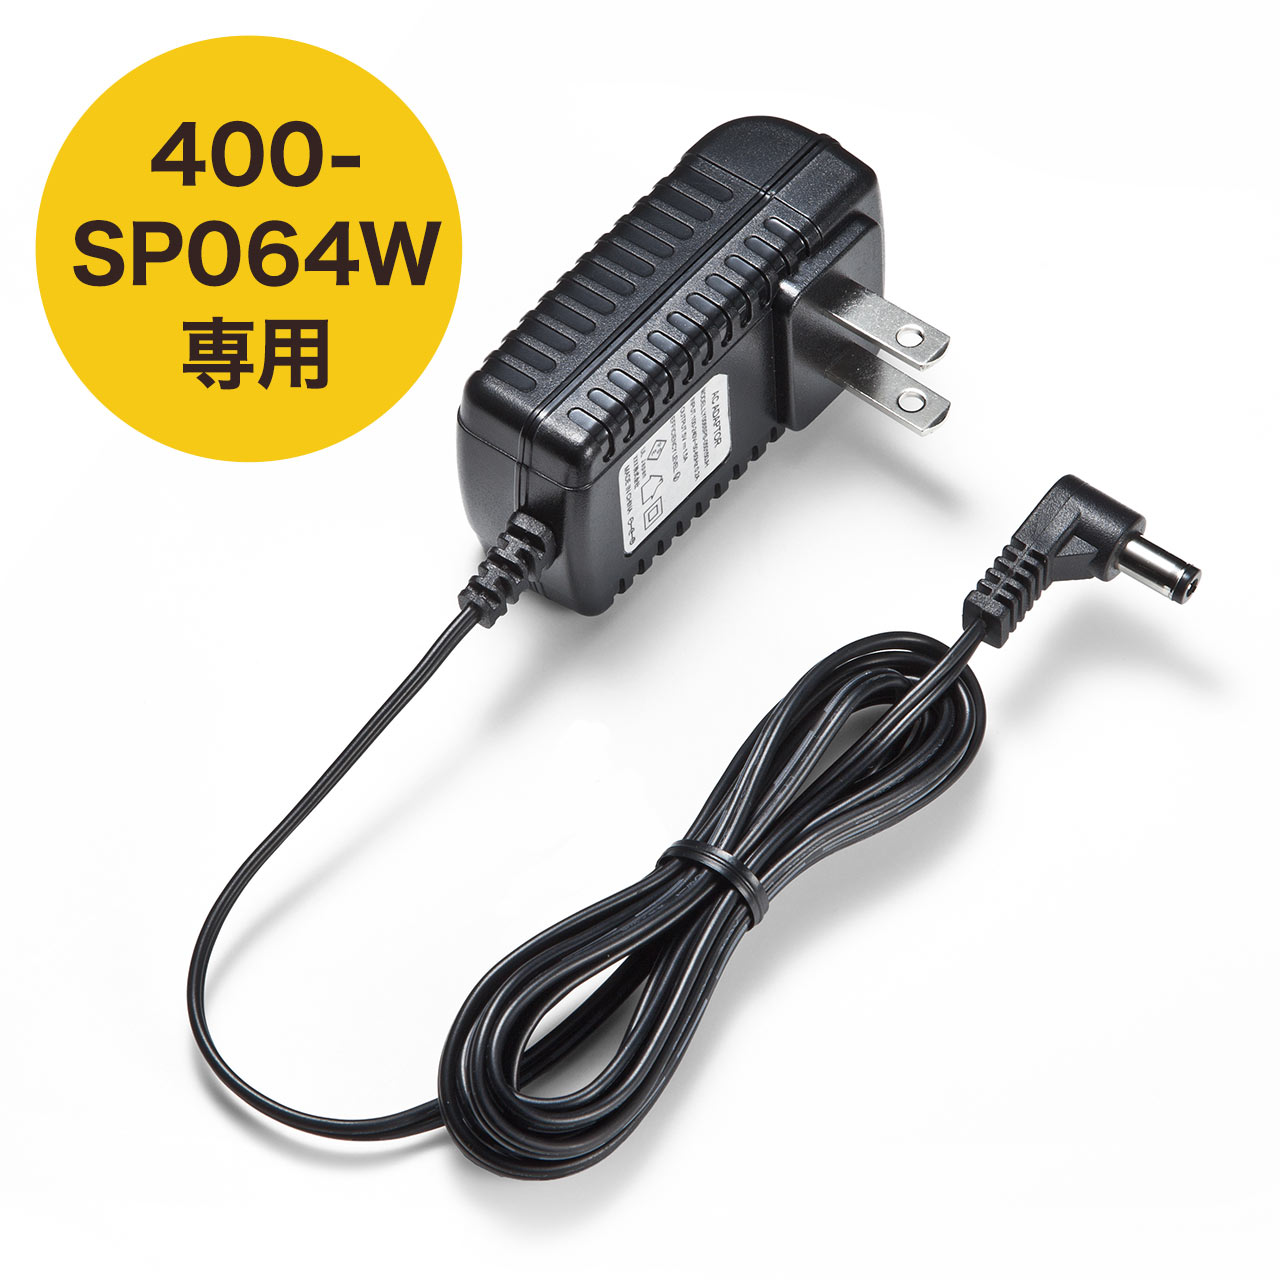 400-SP064WpACA_v^ 400-SP064W-AC